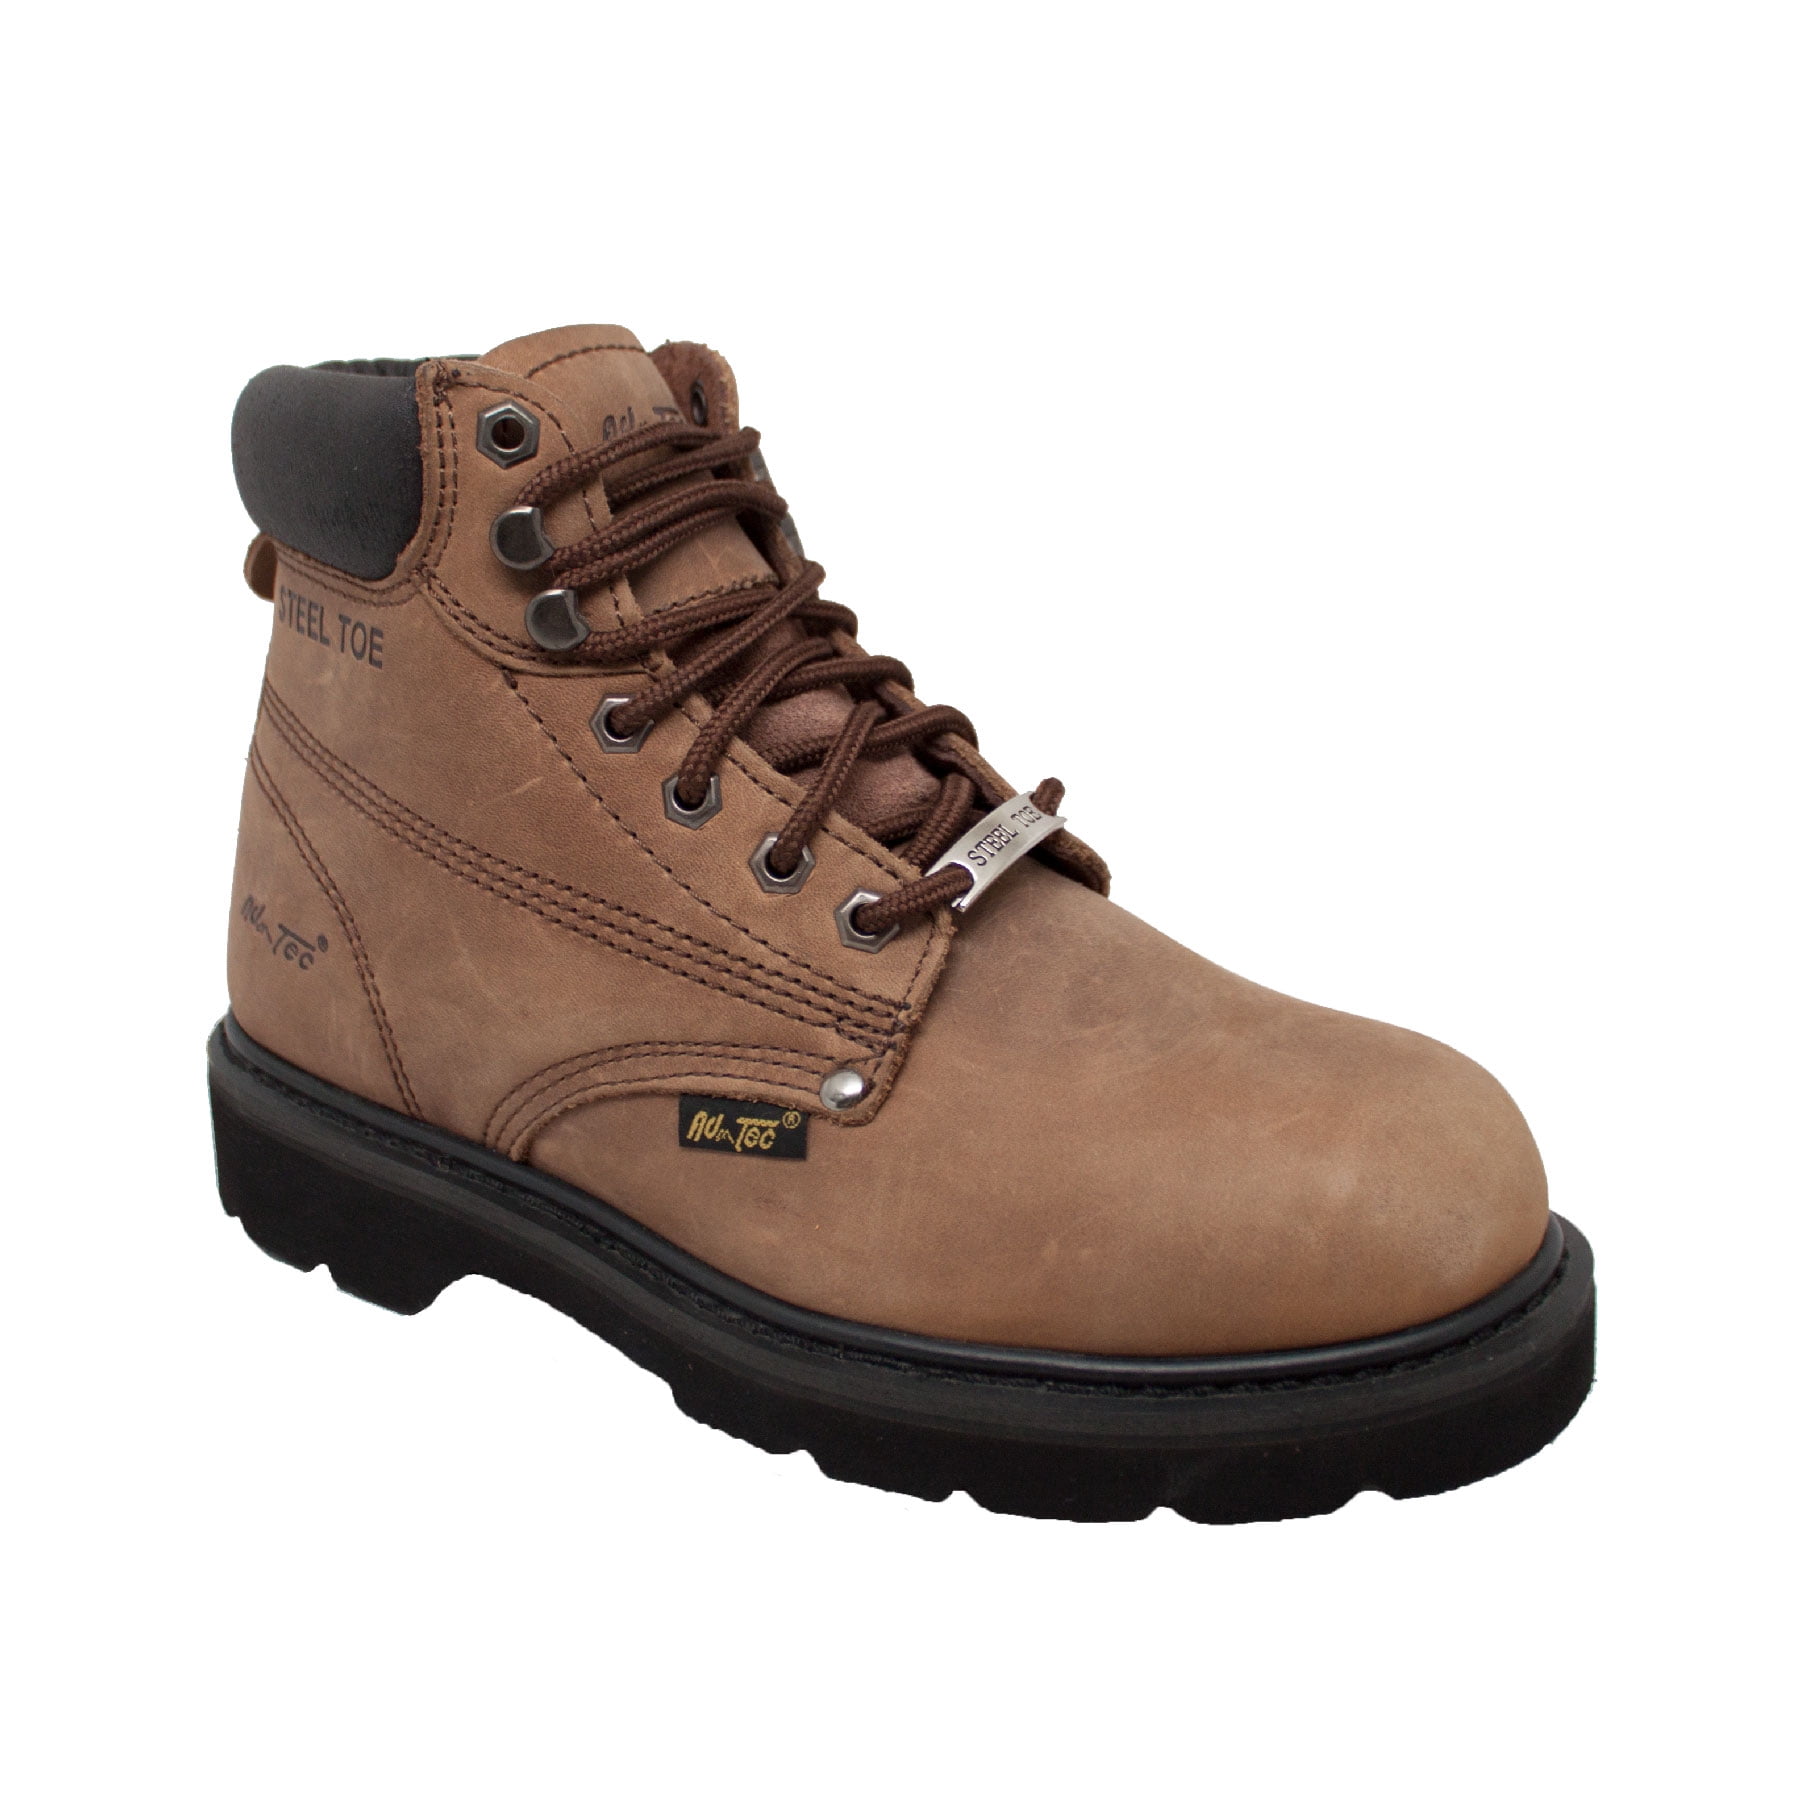 AdTec Men's 8" Composite Toe Cap Waterproof Leather Work Boot Hiker Brown 9679 